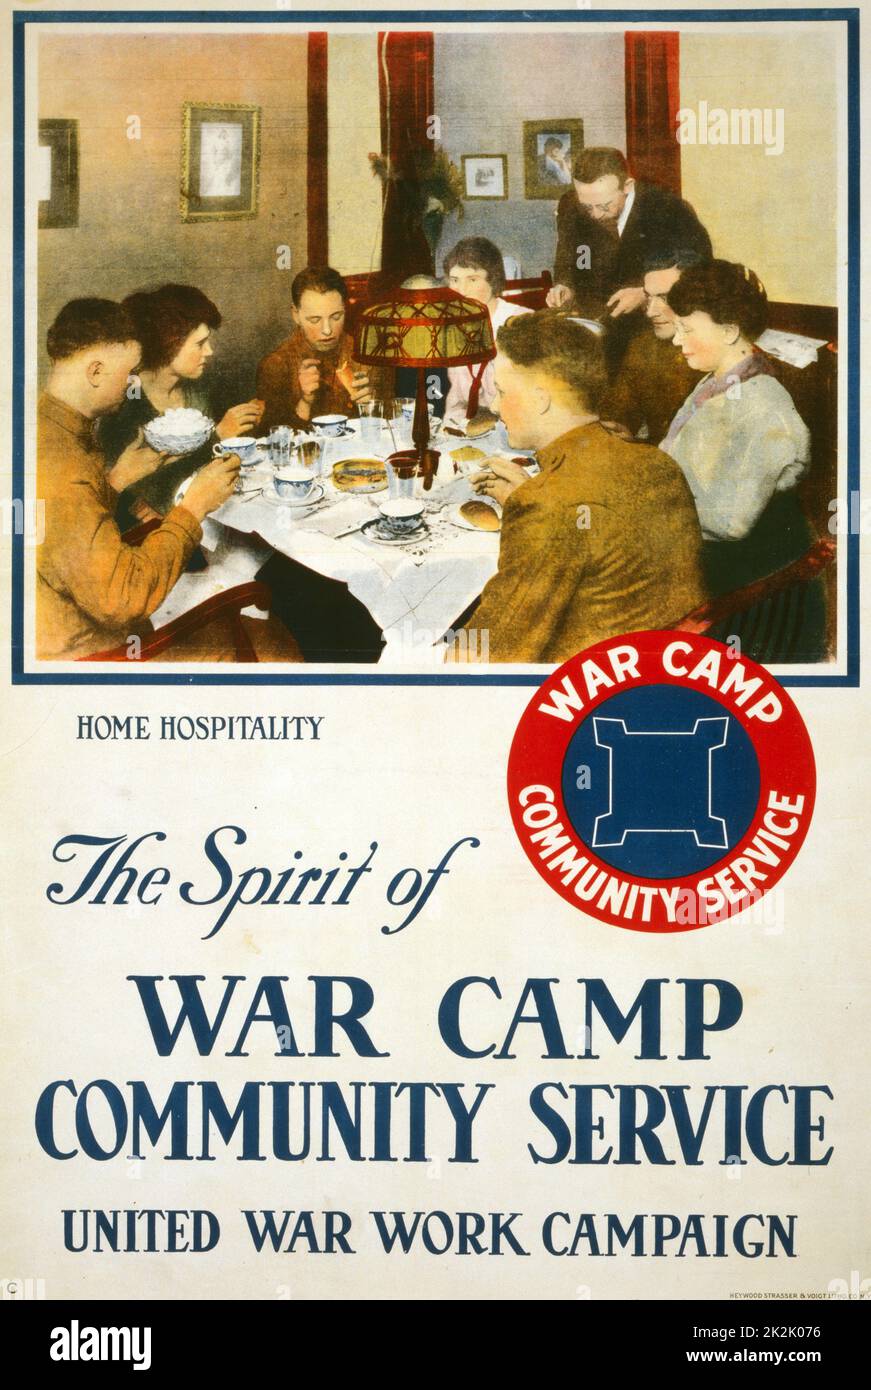 Titolo: lo spirito della guerra camp servizio comunitario, Regno guerra campagna di lavoro / Heywood Strasser & Voigt Litho. Co. N.Y. 1918 poster che mostra un gruppo di soldati a cena in una casa. Foto Stock